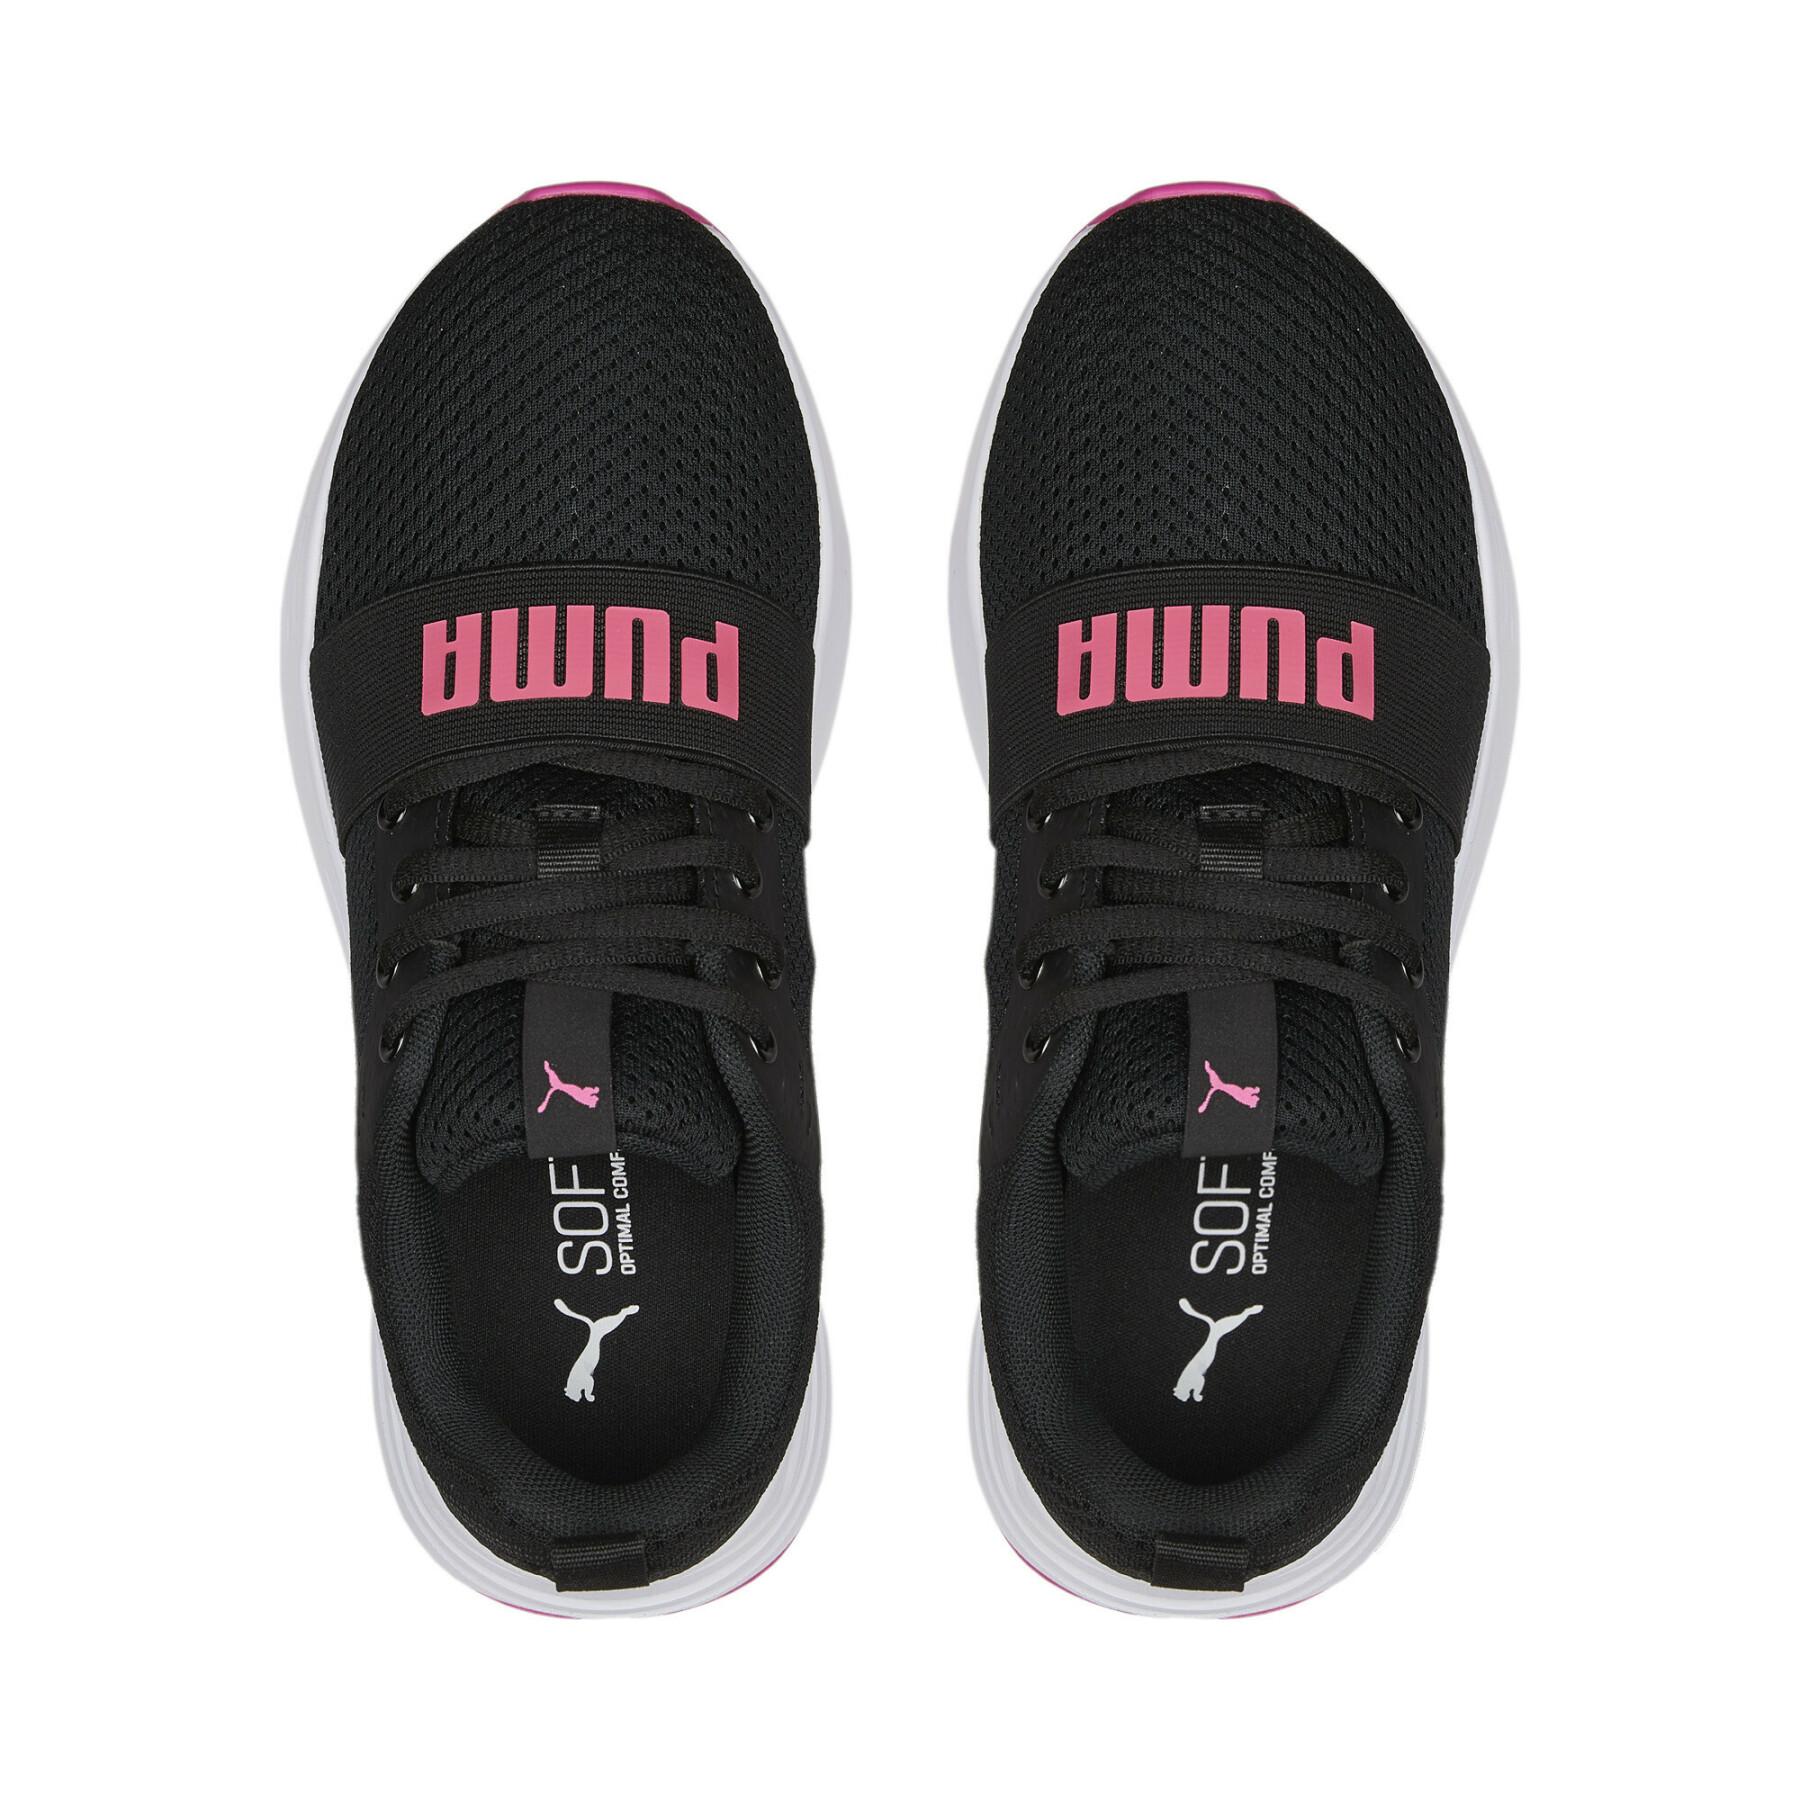 Schuhe Puma Wired Run